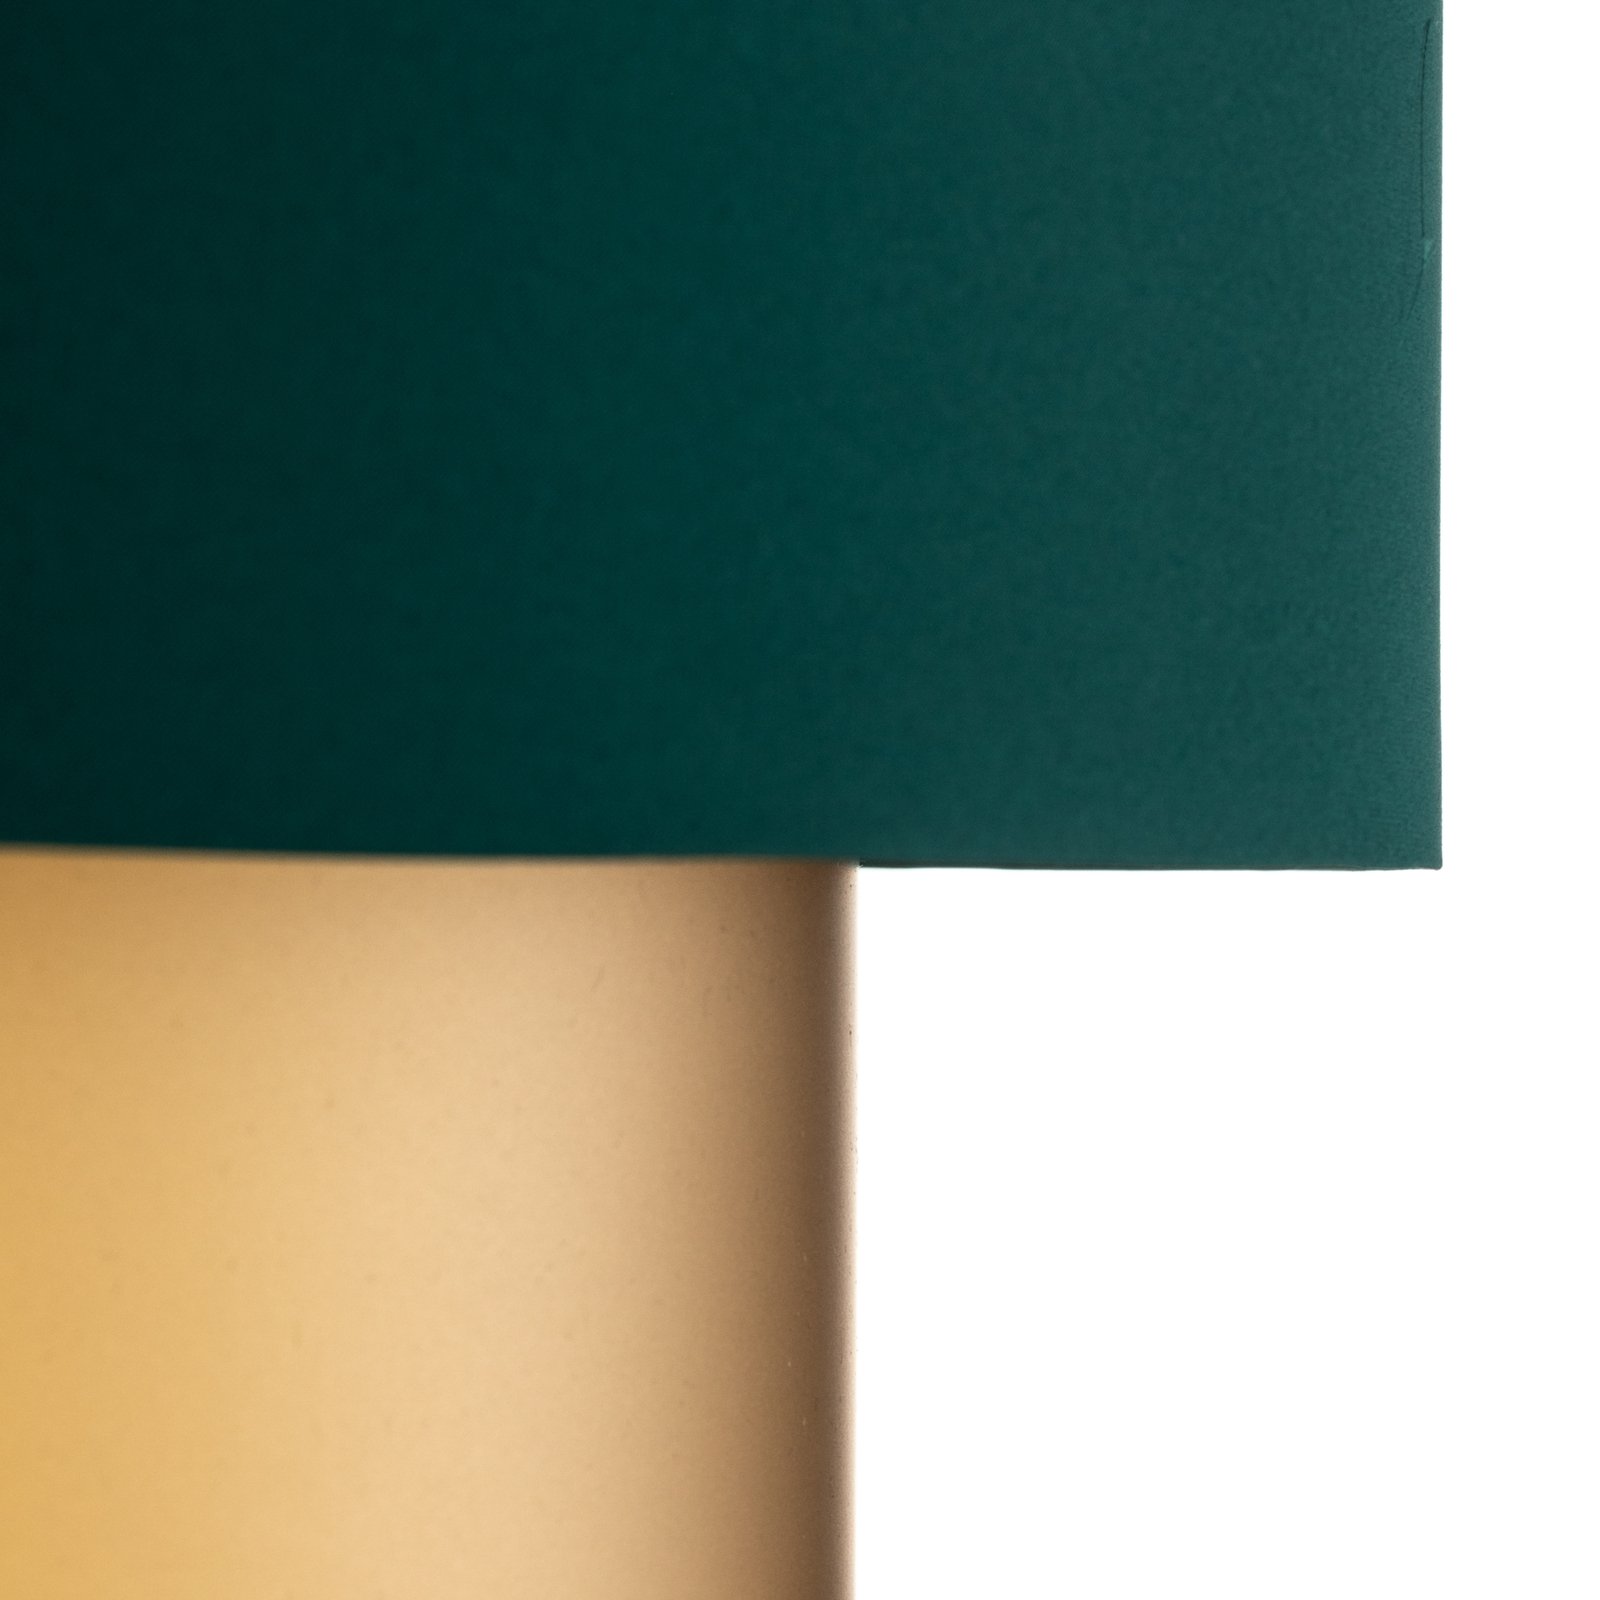 Závěsná lampa Dorina, zelená/zlatá Ø 60 cm